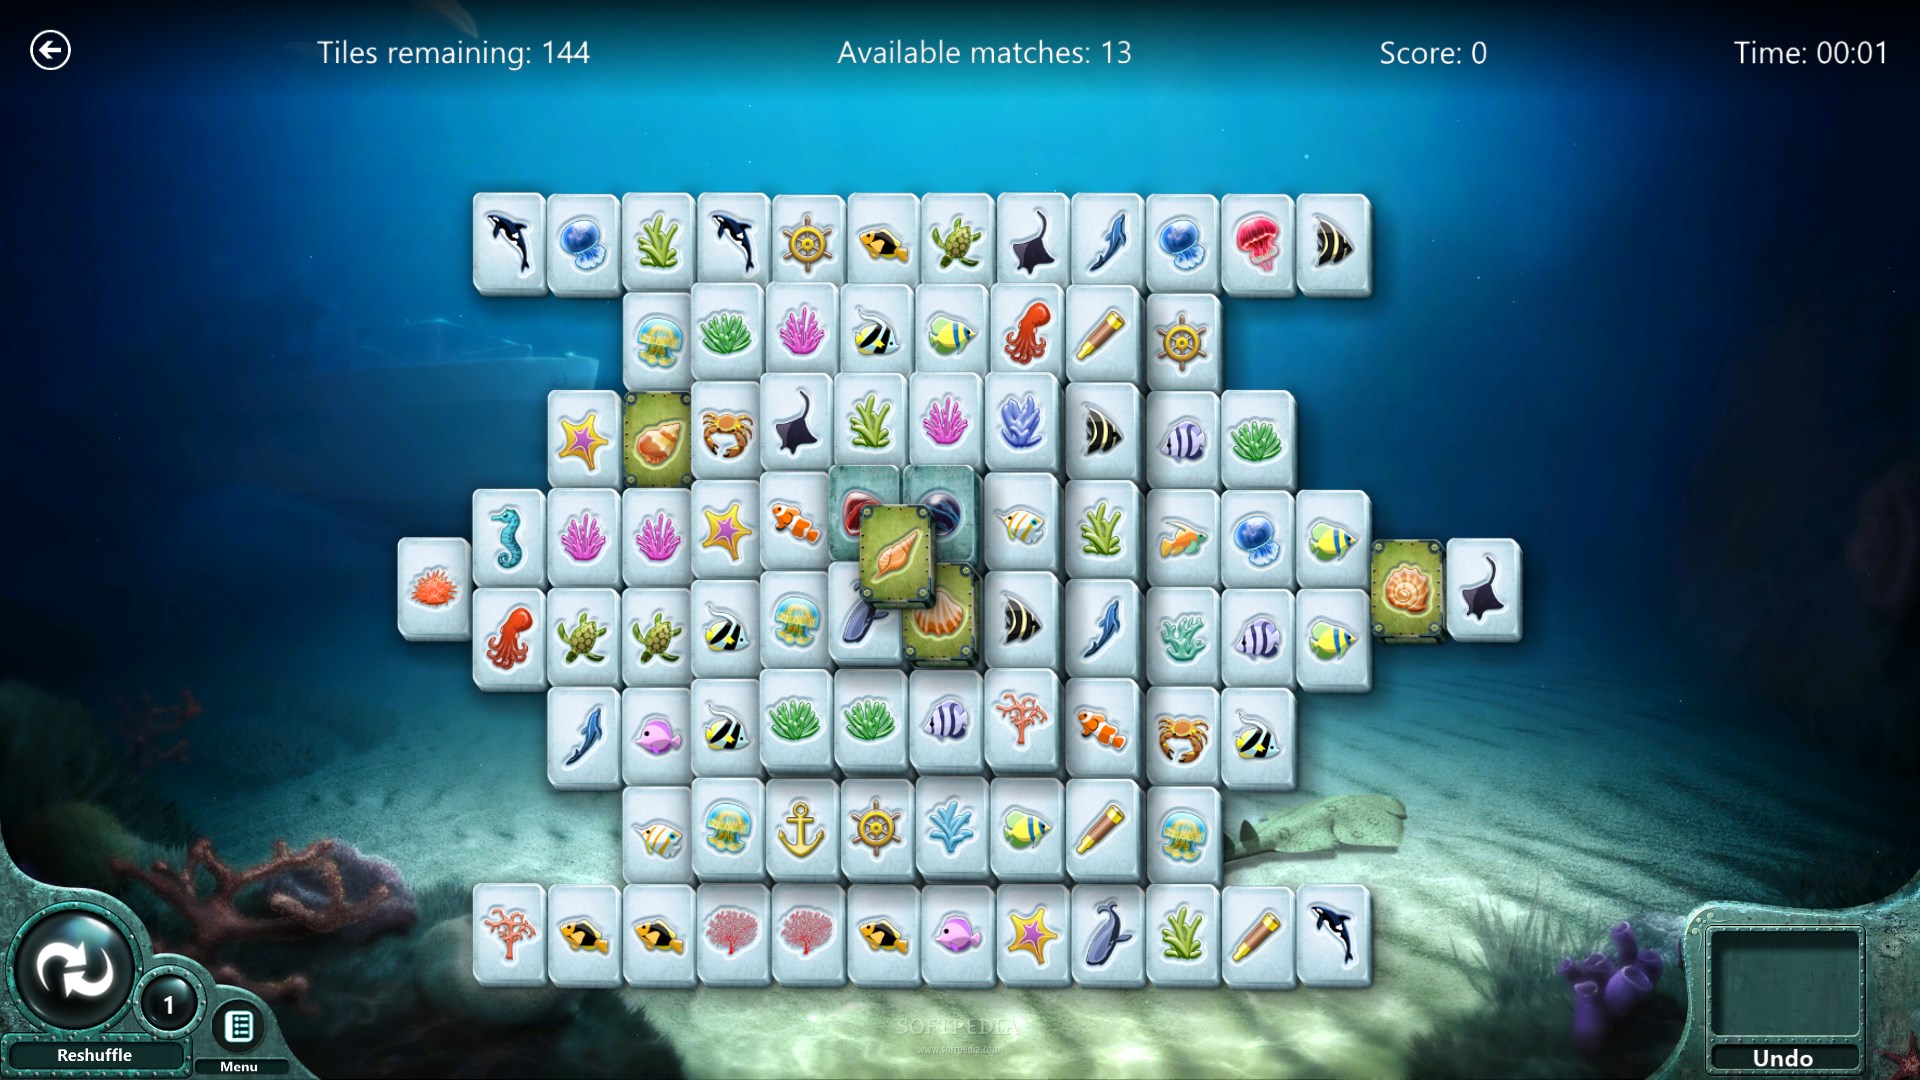 best windows 10 shanghai mahjong tile game